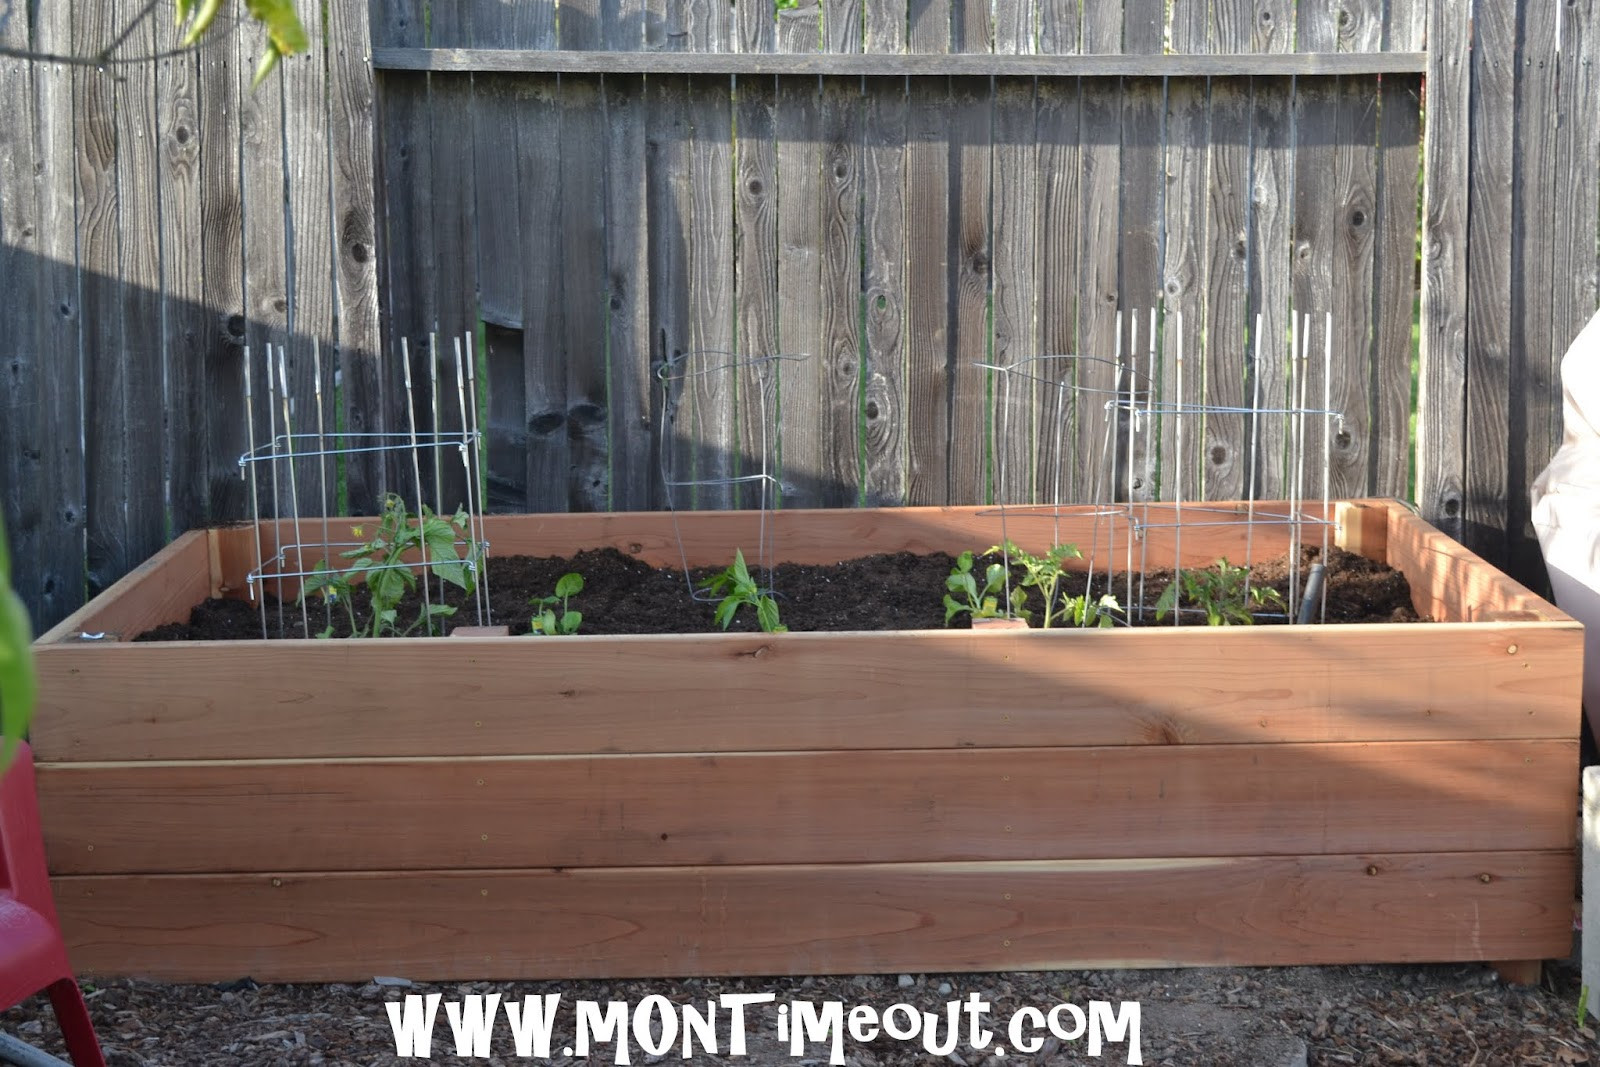 Best ideas about Garden Planter Boxes
. Save or Pin DIY Garden Planter Box Tutorial Now.